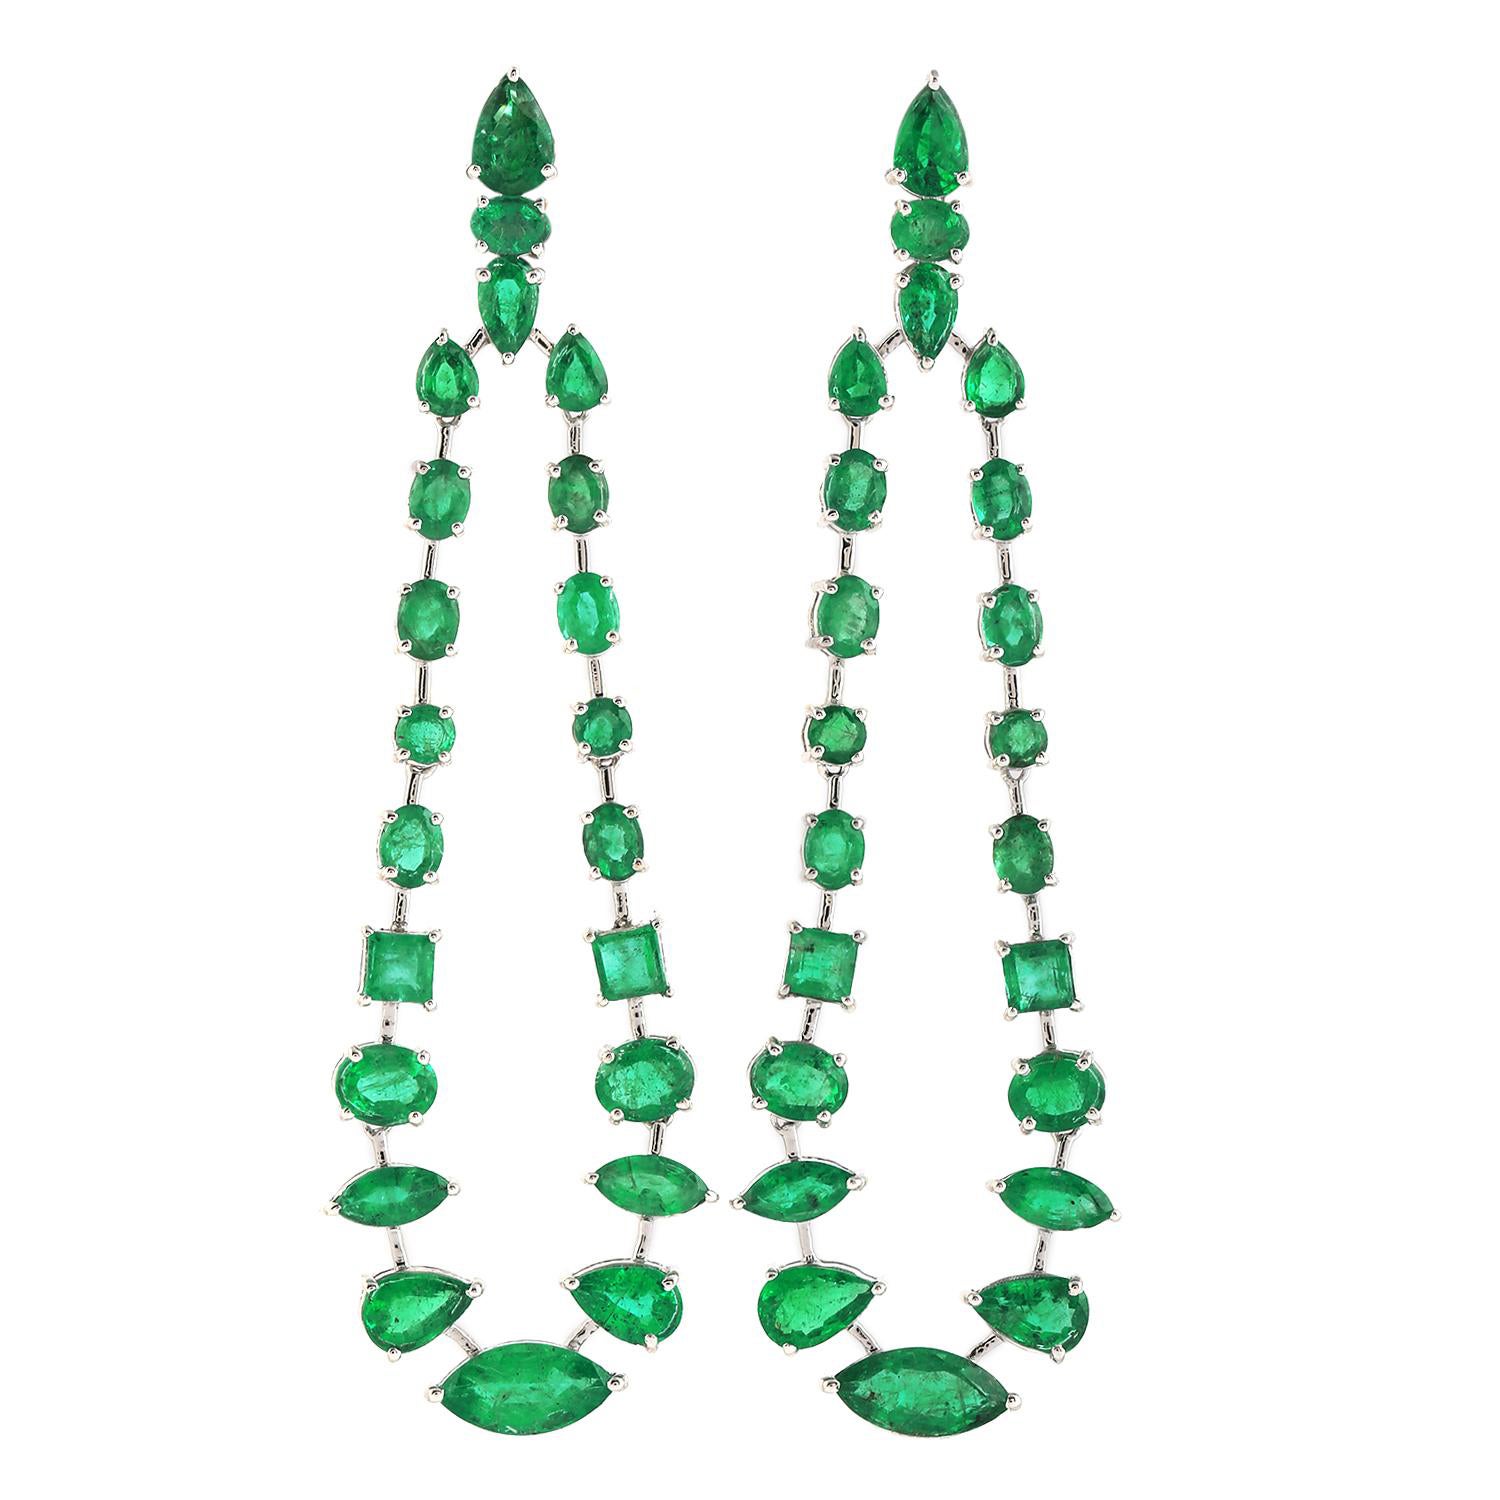 Multi Shaped Zambian Emerald Chandelier Earring Made in 18k White Gold